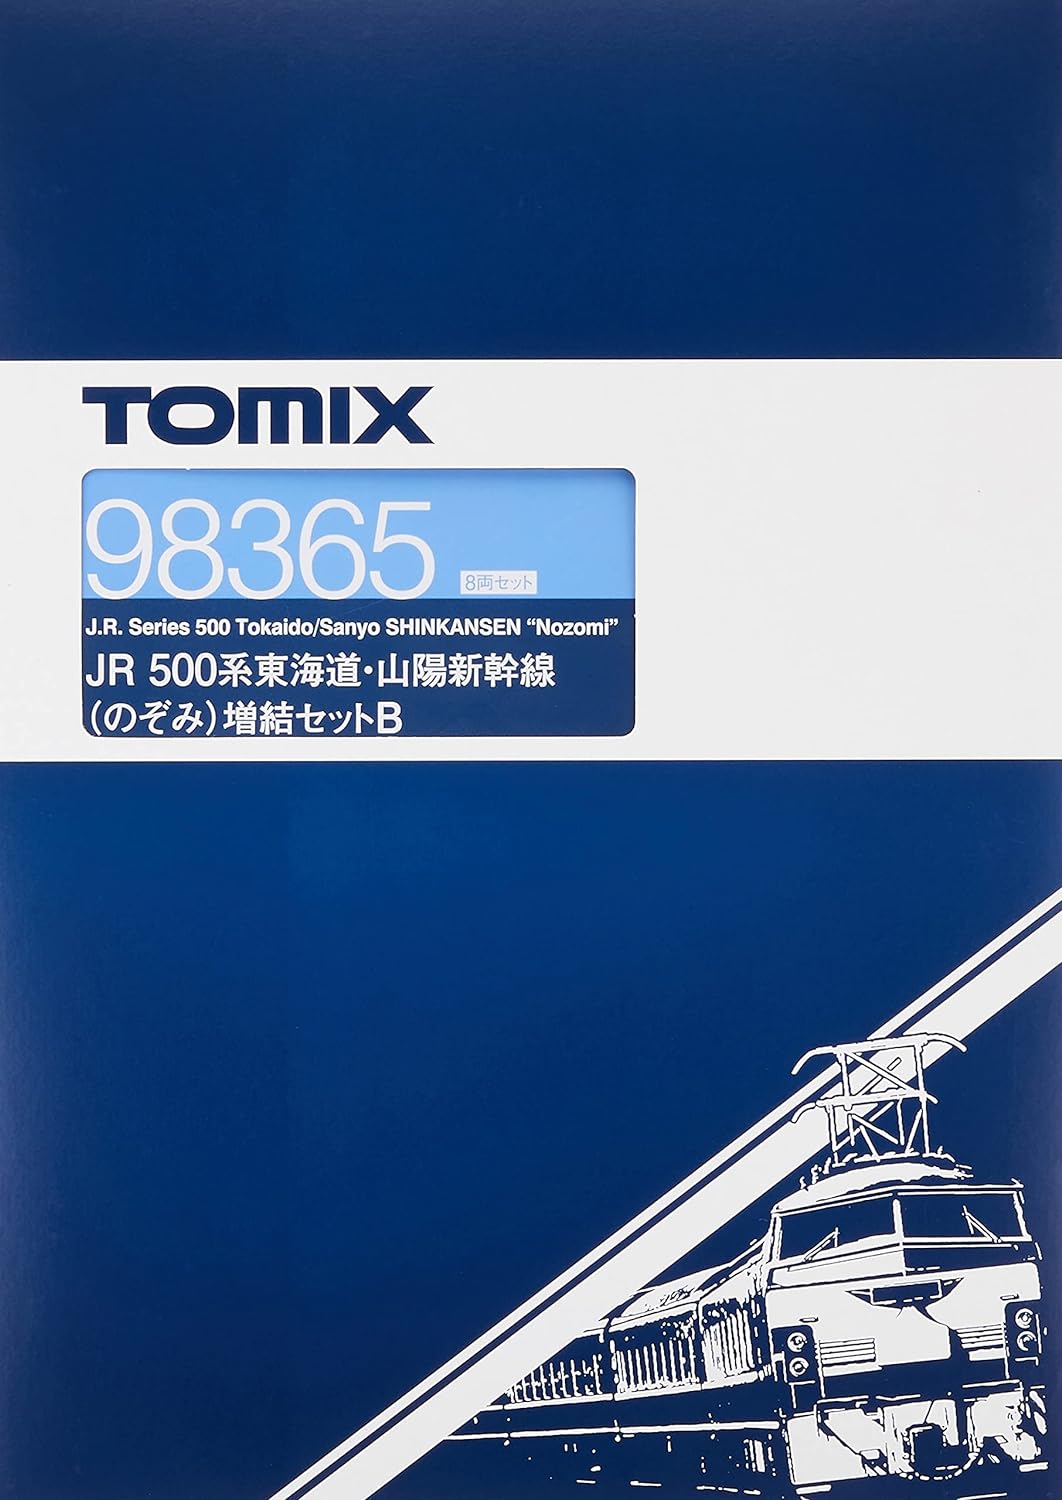 Tomix 98365 J.R. Series 500 Tokaido / Sanyo Shinkansen (Nozomi) Additi - BanzaiHobby